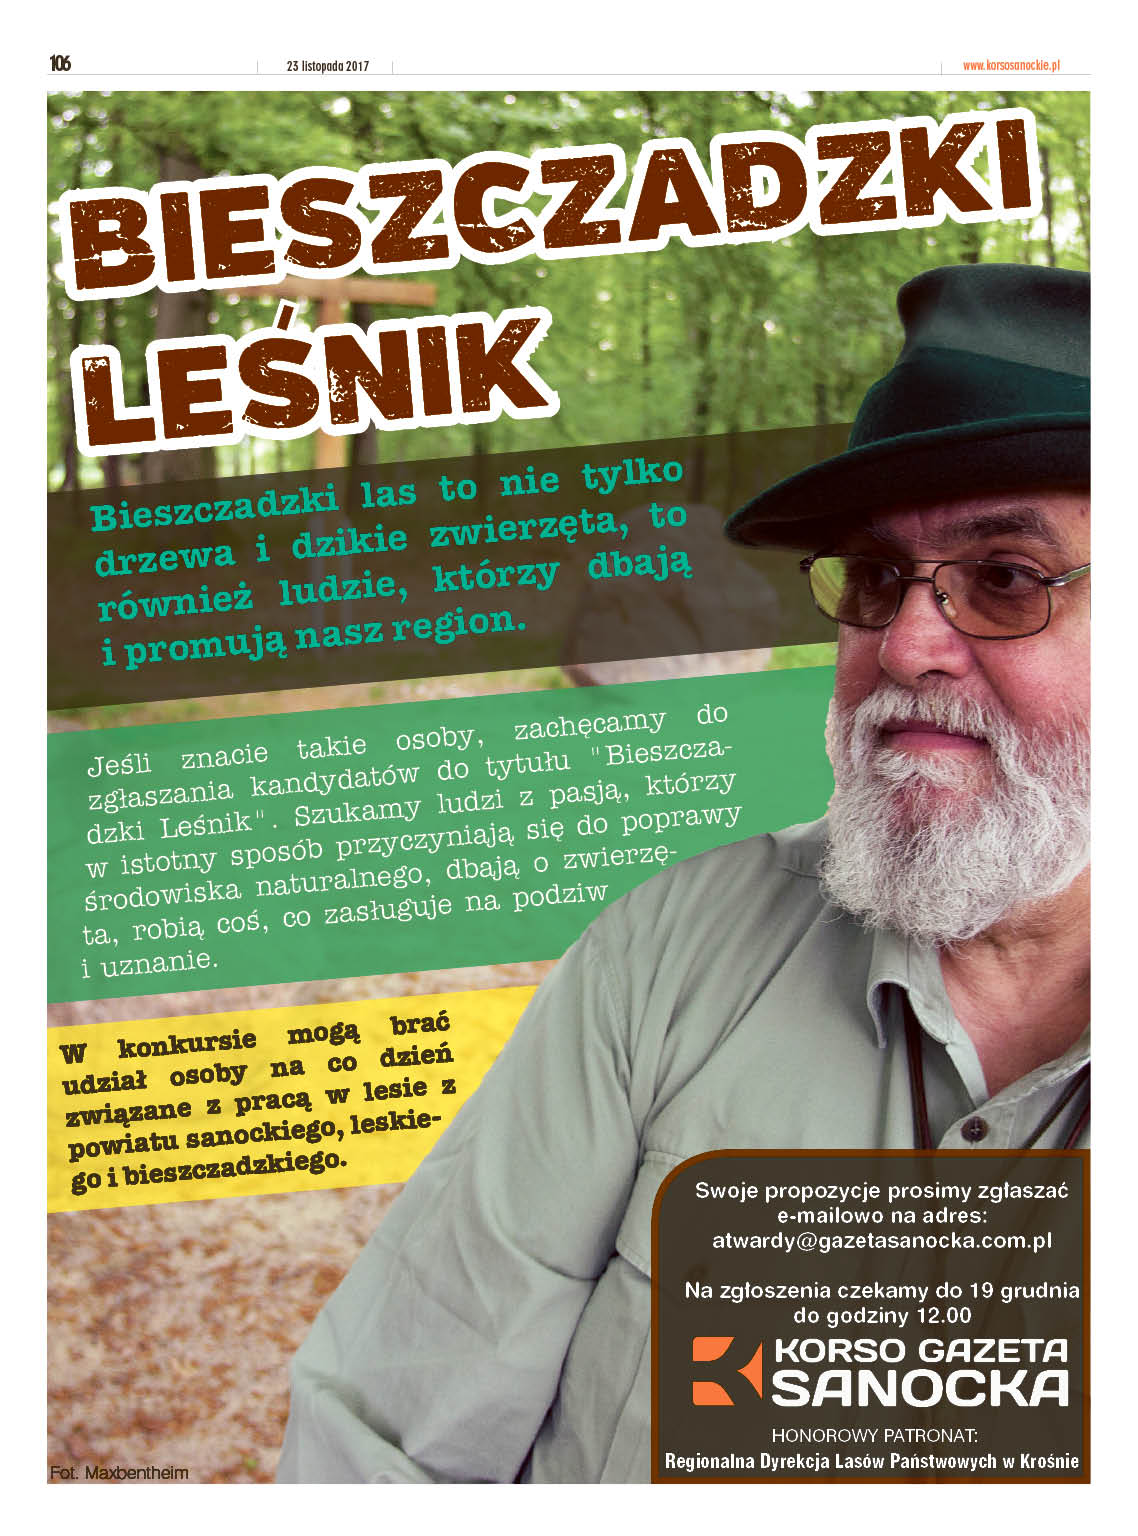 Korso Gazeta Sanocka organizuje kolejny plebiscyt. Tym razem wybieramy Bieszczadzkiego Leśnika. - Zdjęcie główne